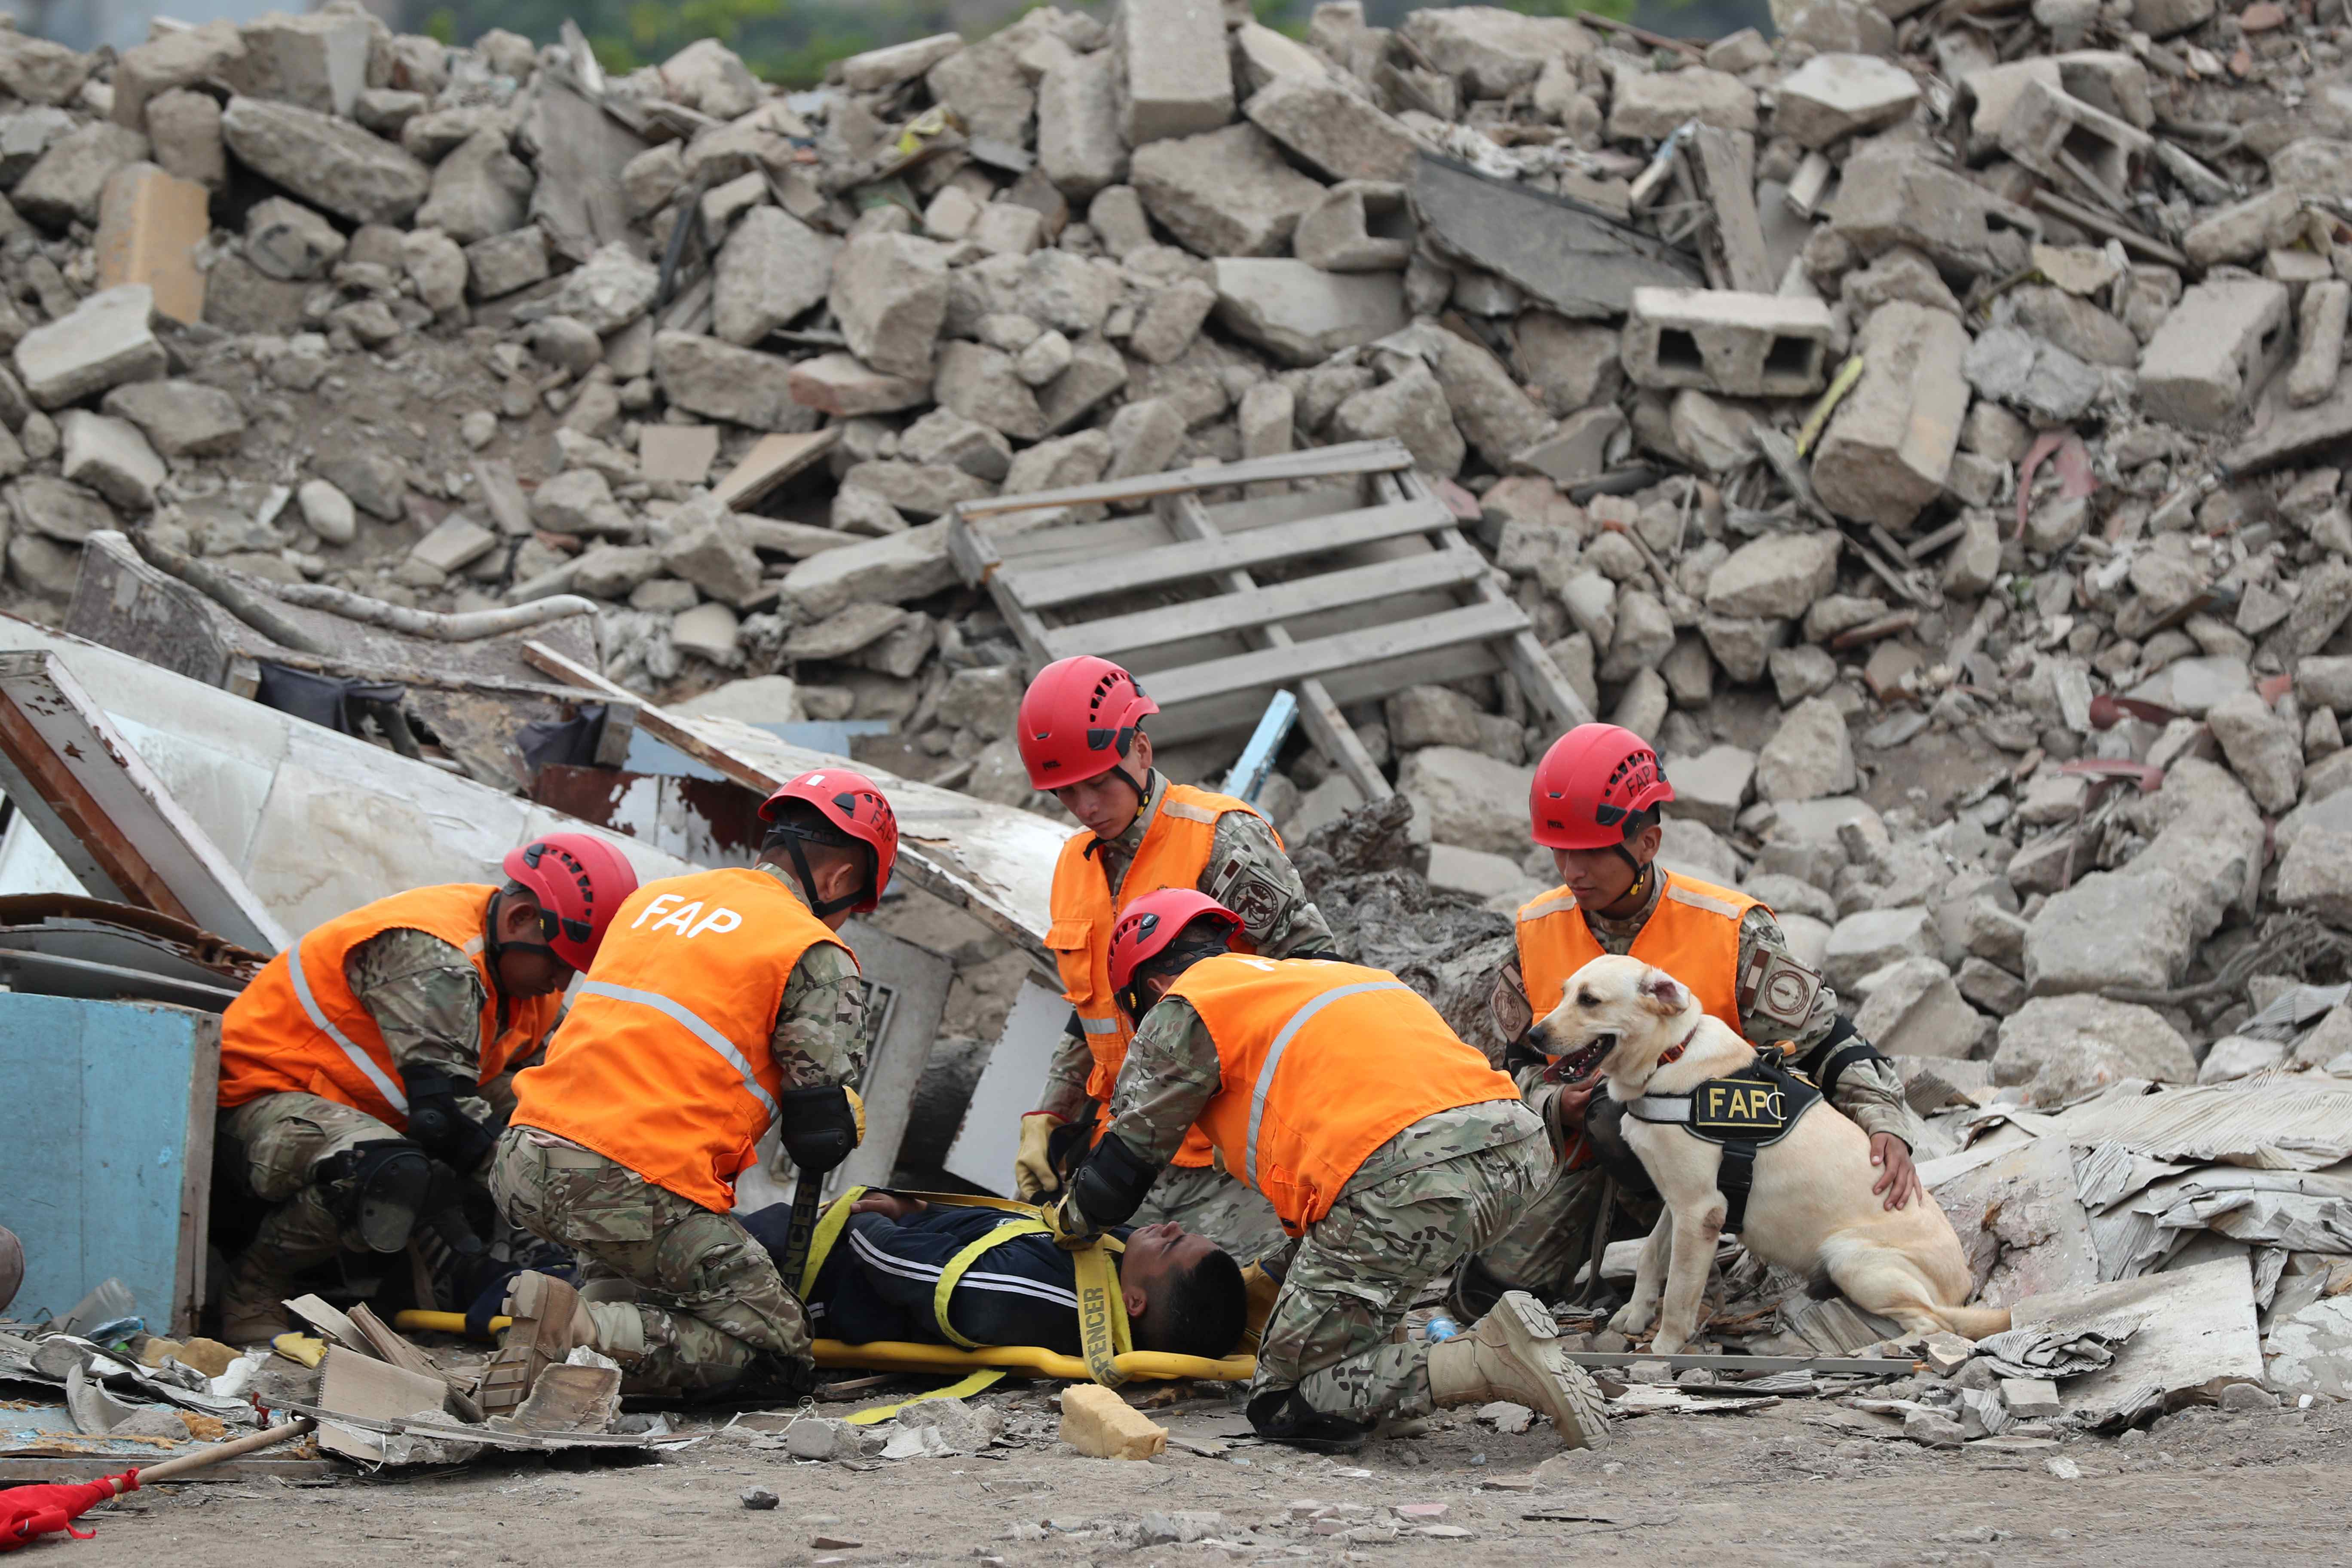 La presidente de Perú, Dina Boluarte, dijo vía virtual desde China:  "Esperamos que en las réplicas no surja una víctima", tras sismo de magnitud 7.2 durante la madrugada del 27 de junio. Imagen ilustrativa. (Foto Prensa Libre: EFE/ Paolo Aguilar).